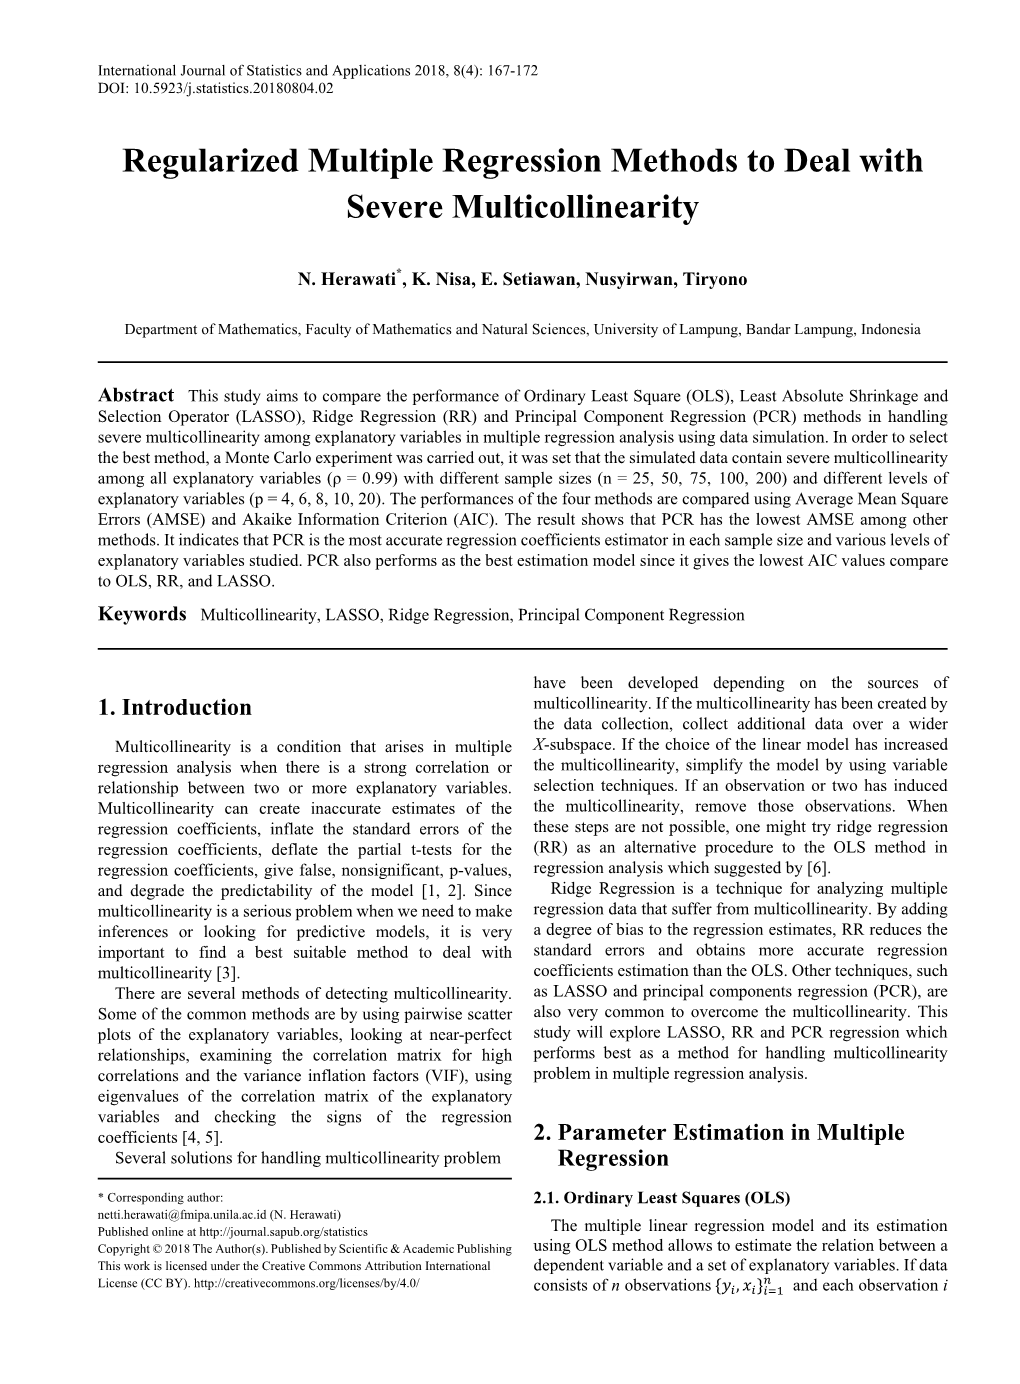 Multicollinearity, LASSO, Ridge Regression, Principal Component Regression